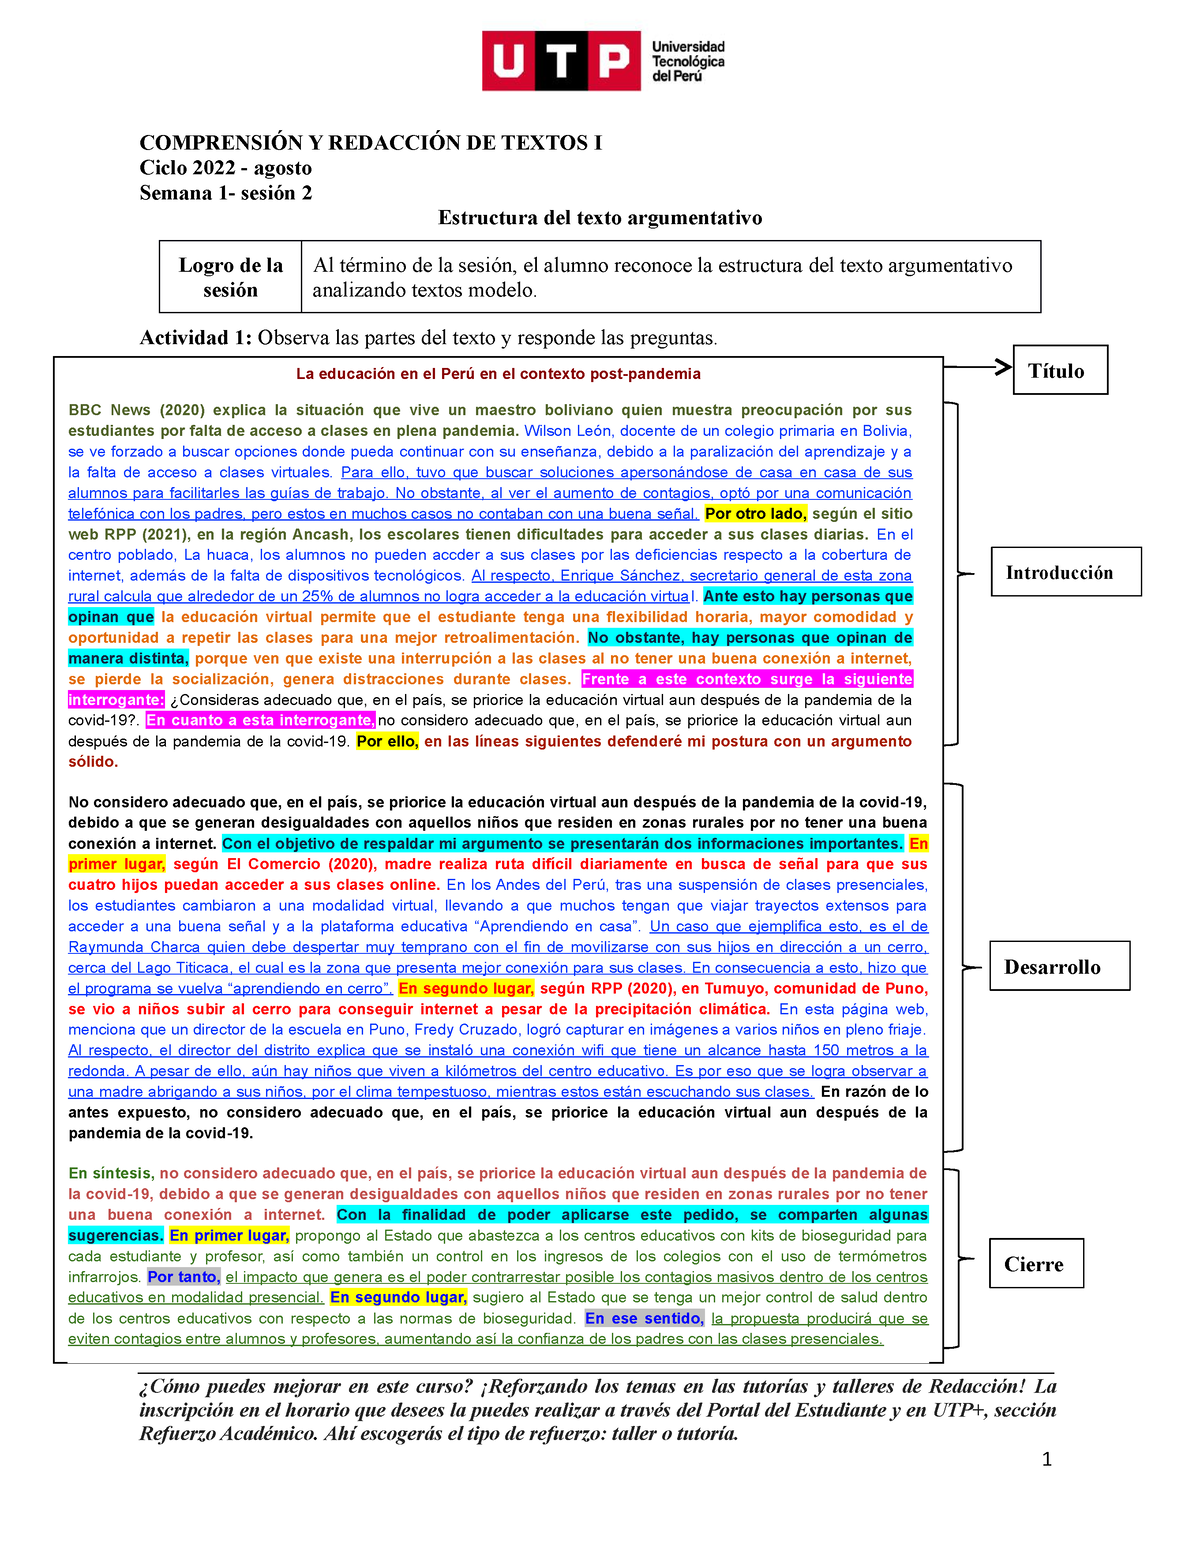 S S Material Estructura Del Texto Argumentativo Utp Comprensi N Y Redacci N De Textos I